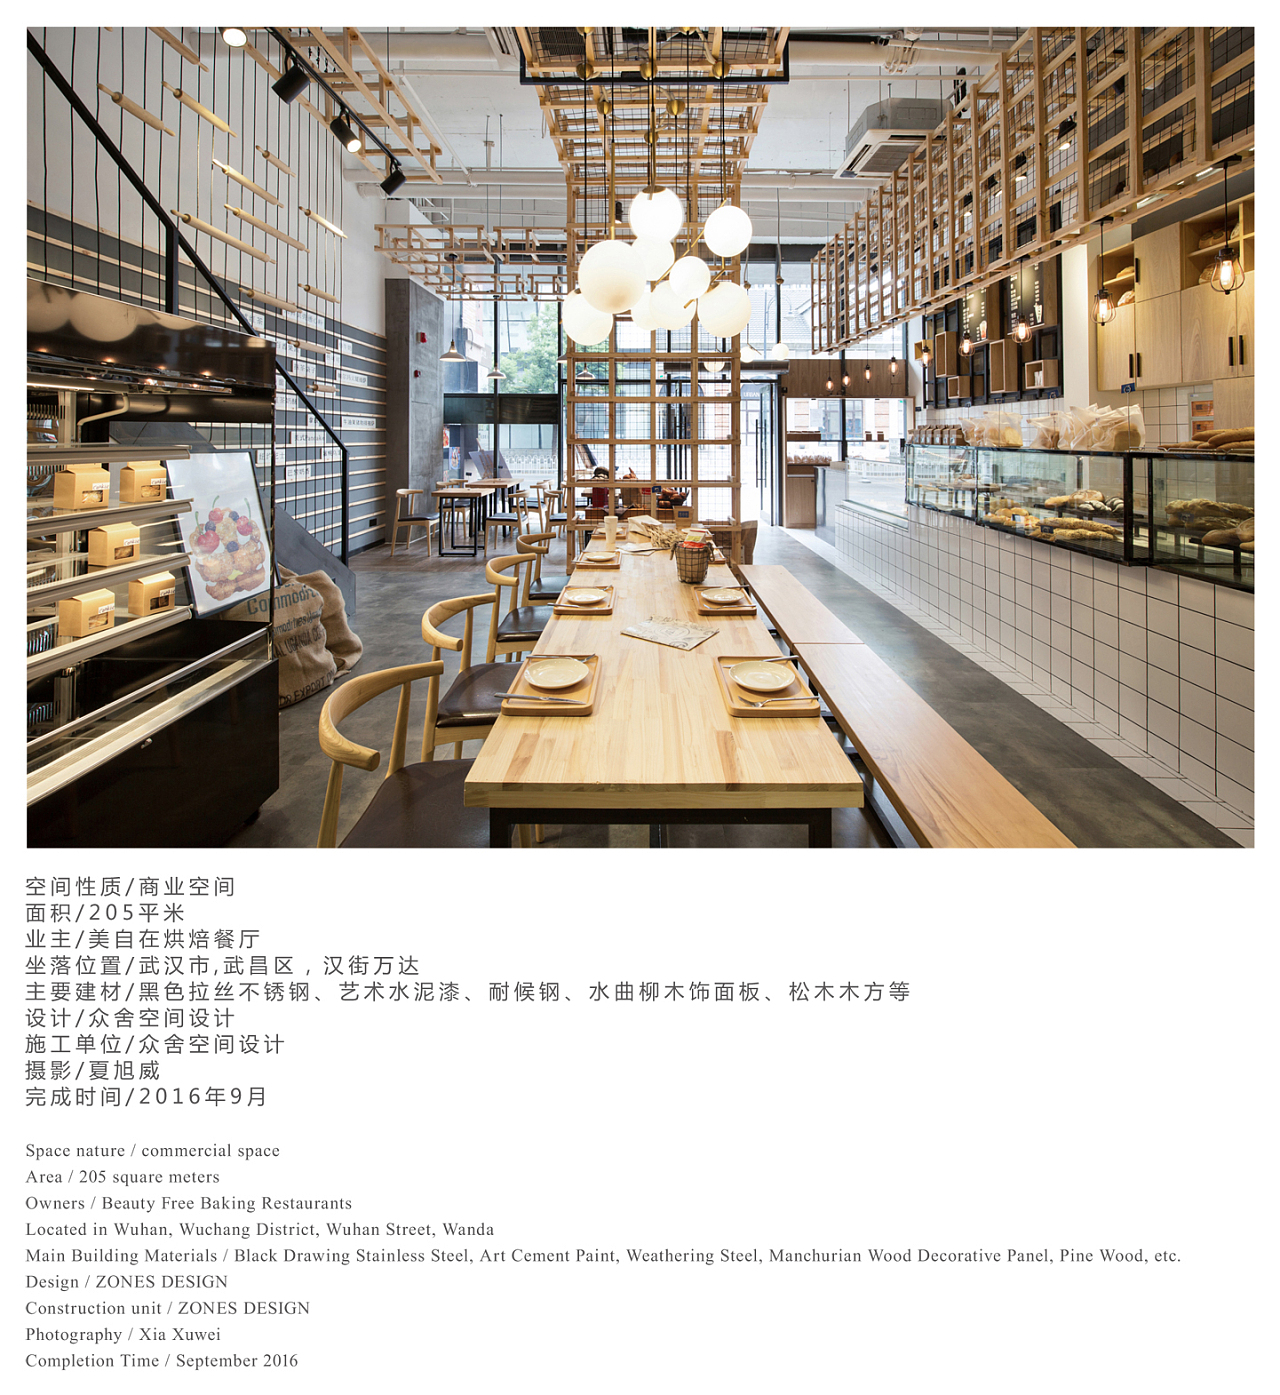 “新时代、新烘焙、新国潮”---HAH带您领略只开放72小时的“烘焙快闪小镇” • 上海汉海展览咨询有限公司